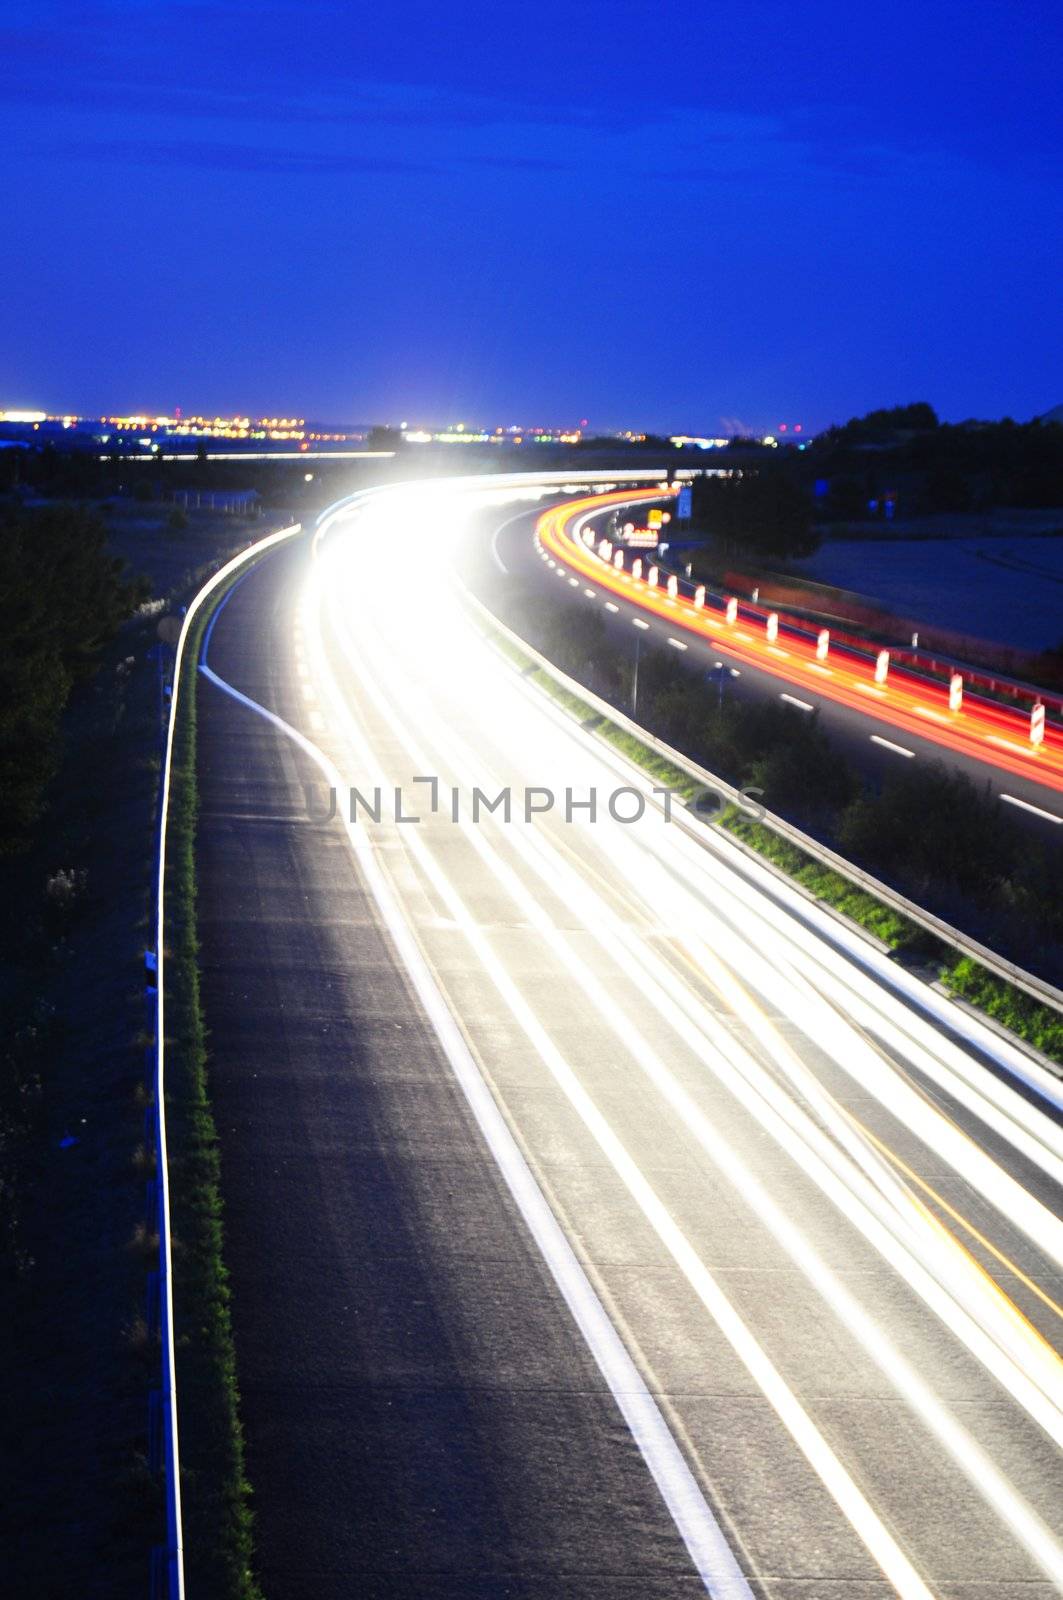 night traffic on highway by gunnar3000